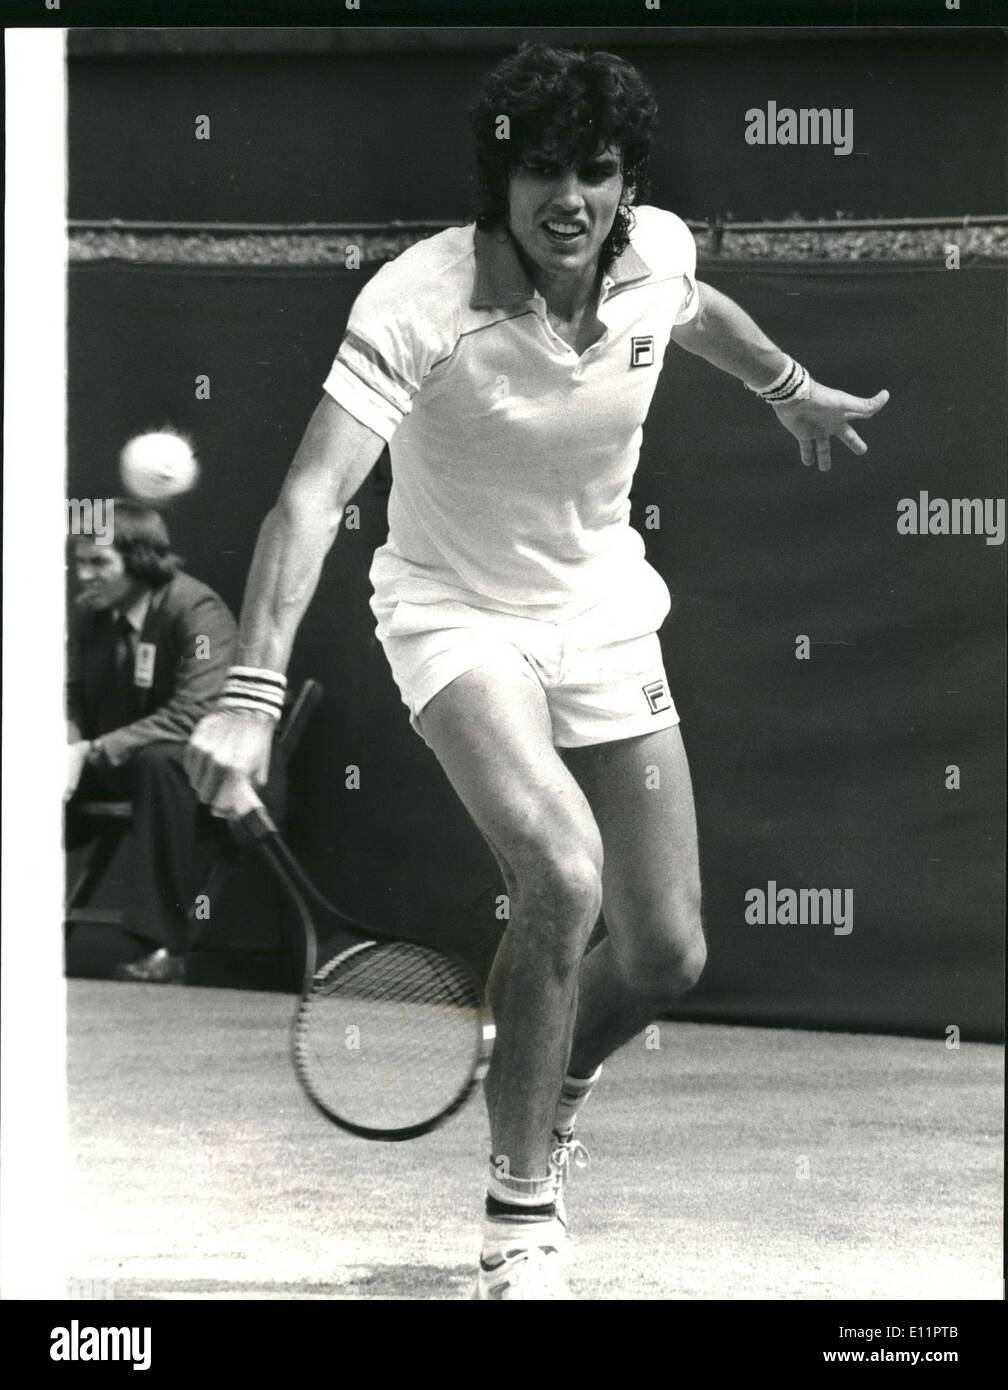 Juin 06, 1979 - Mc Enroe Pecci V dans la finale du tennis Astois Stella  Queen's Club. Montre Photo : Victor Pecci (Paraguay) vu en action contre  John Mc Enroe durant la